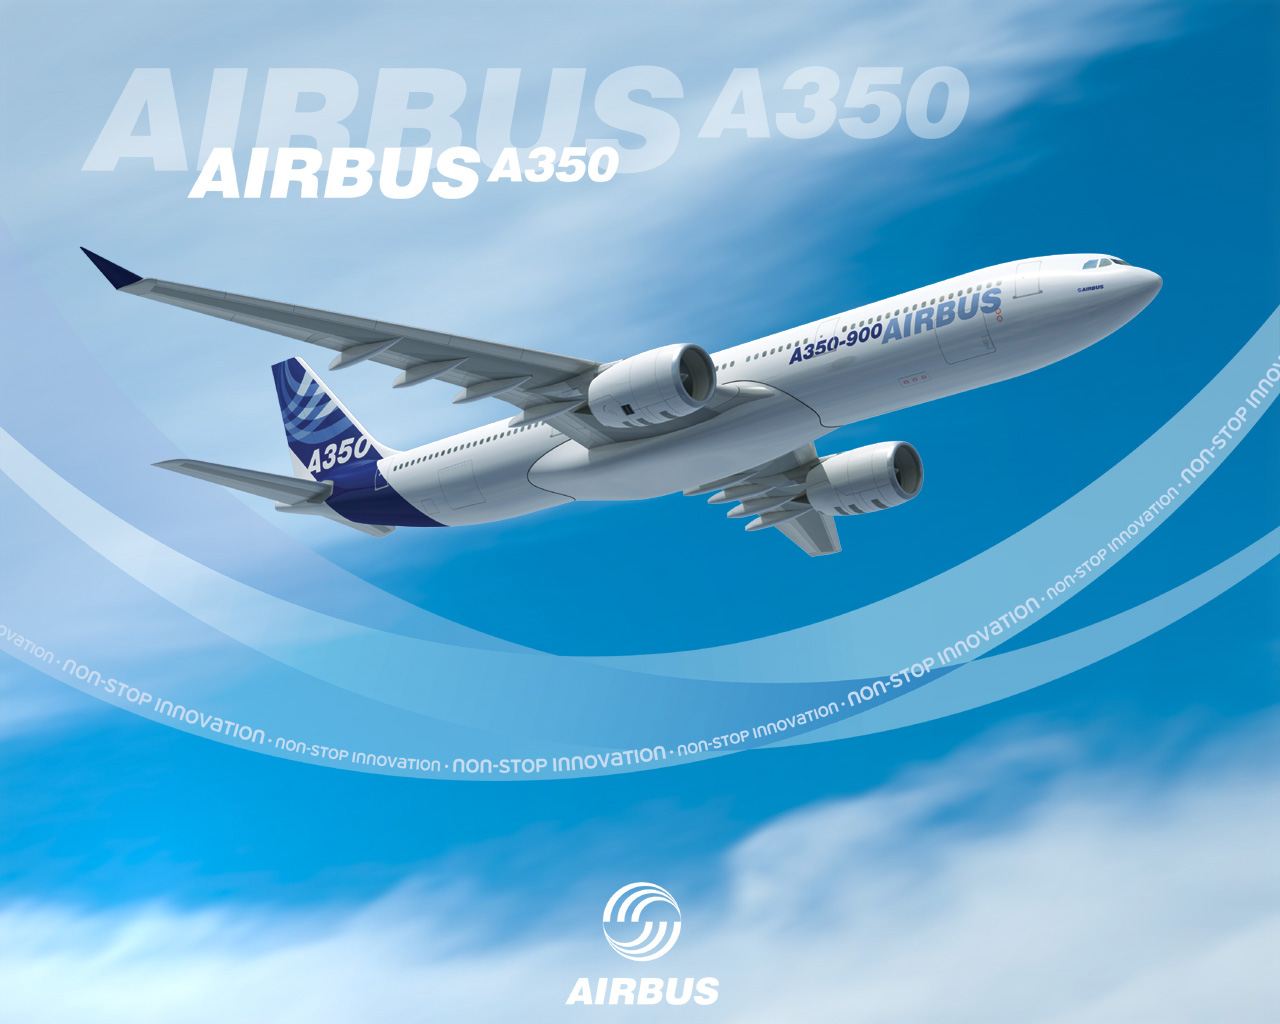 Britain announces loan for Airbus A350 